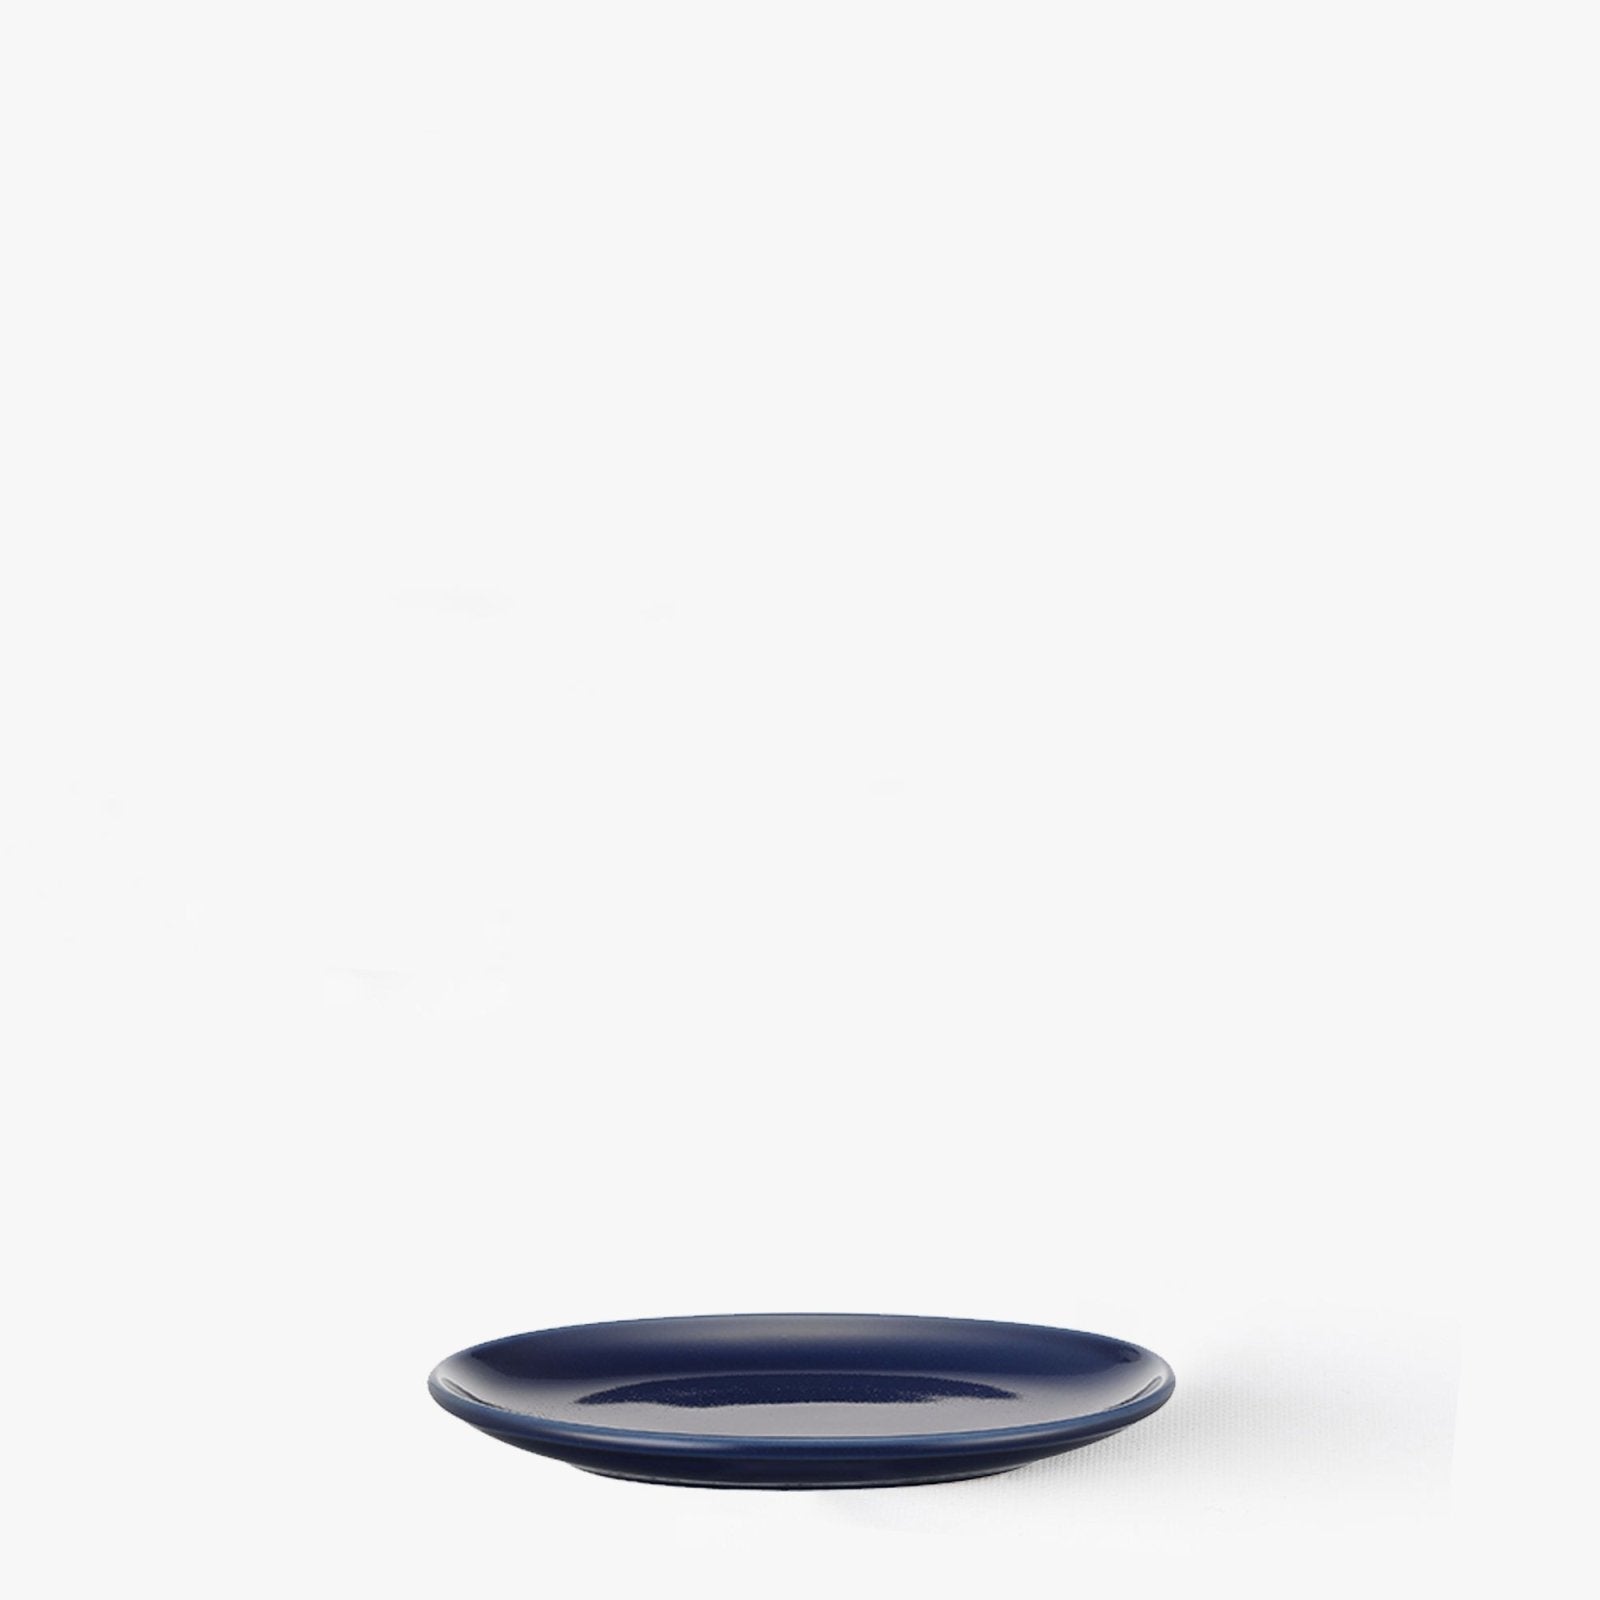 Assiette ovale Bleu marine Ø 150mm - Common -iRASSHAi